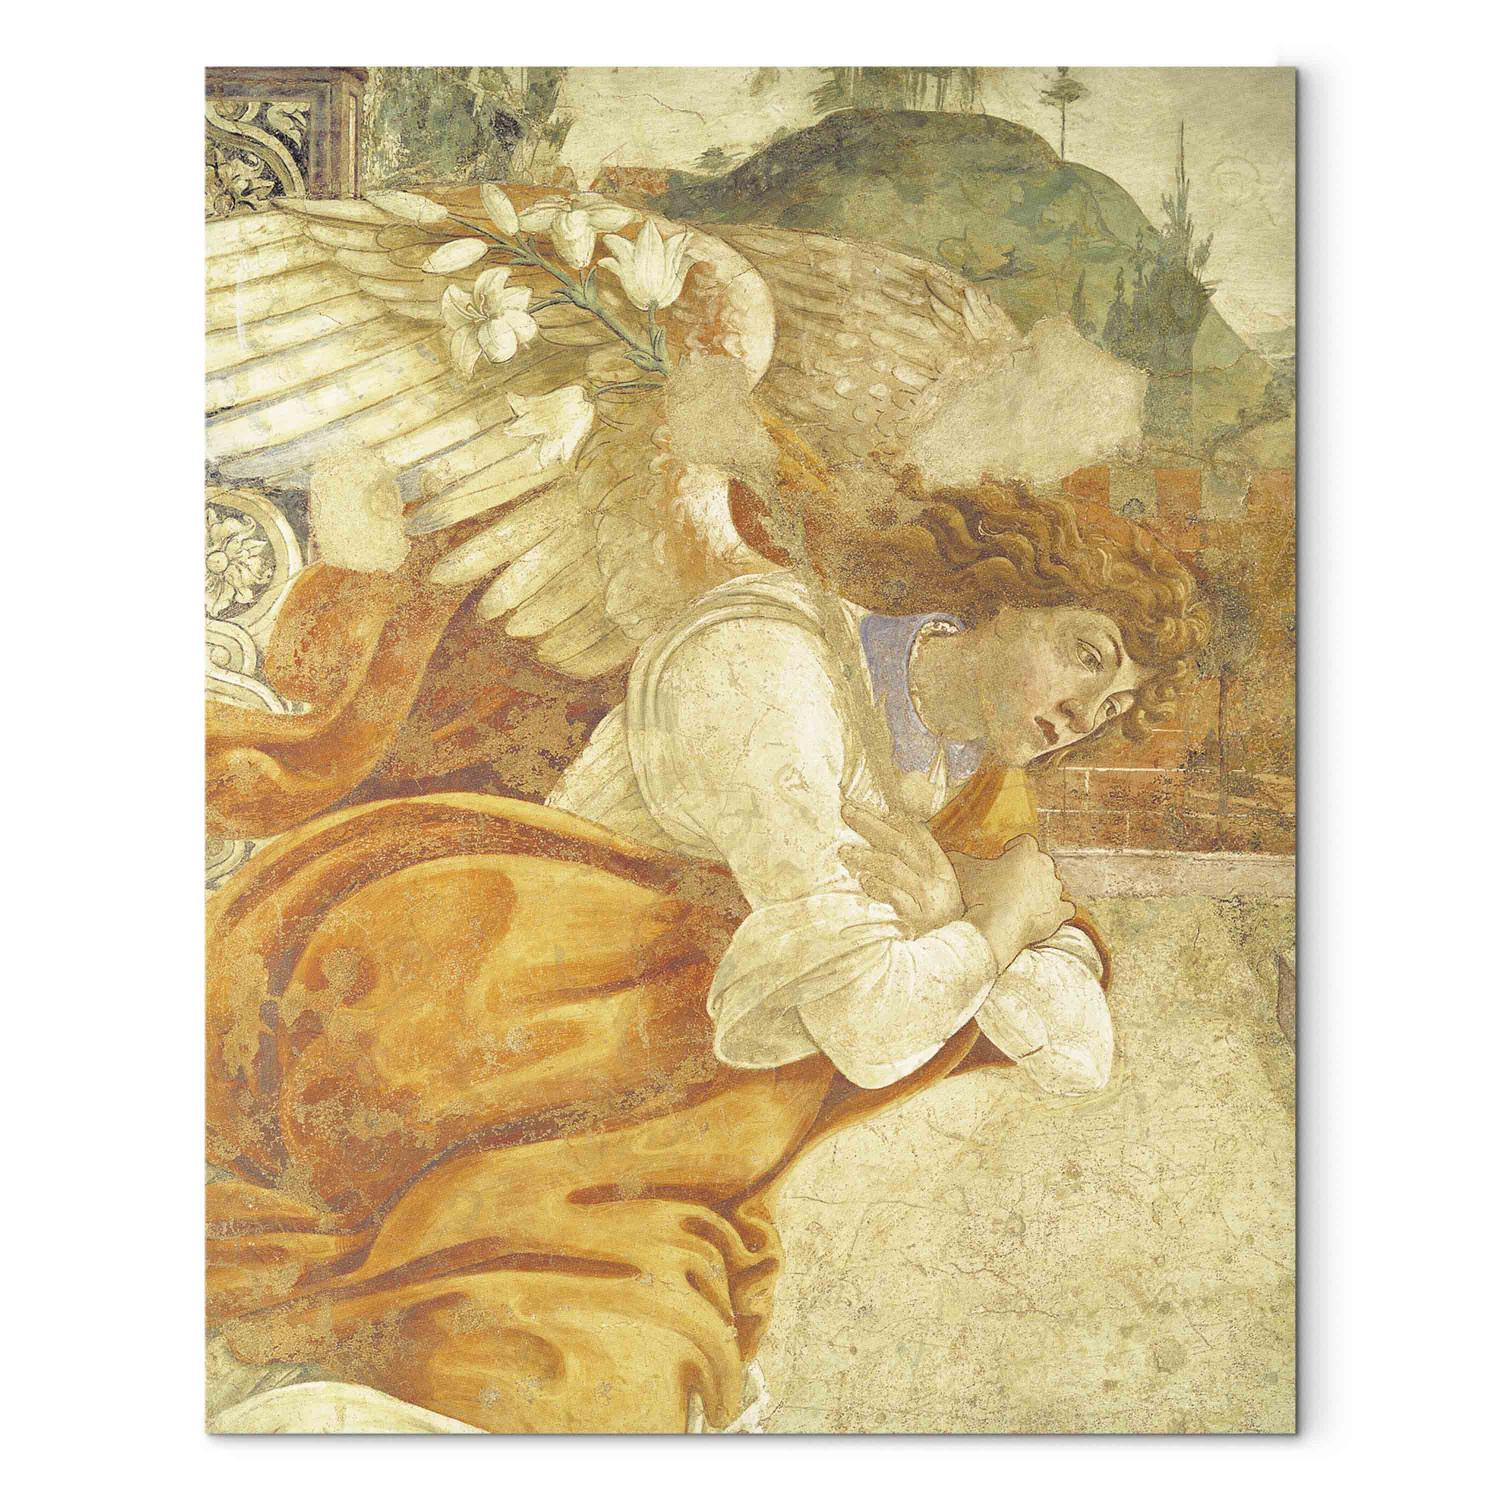 Reproducción de cuadro The Annunciation, detail of the Archangel Gabriel, from San Martino della Scala